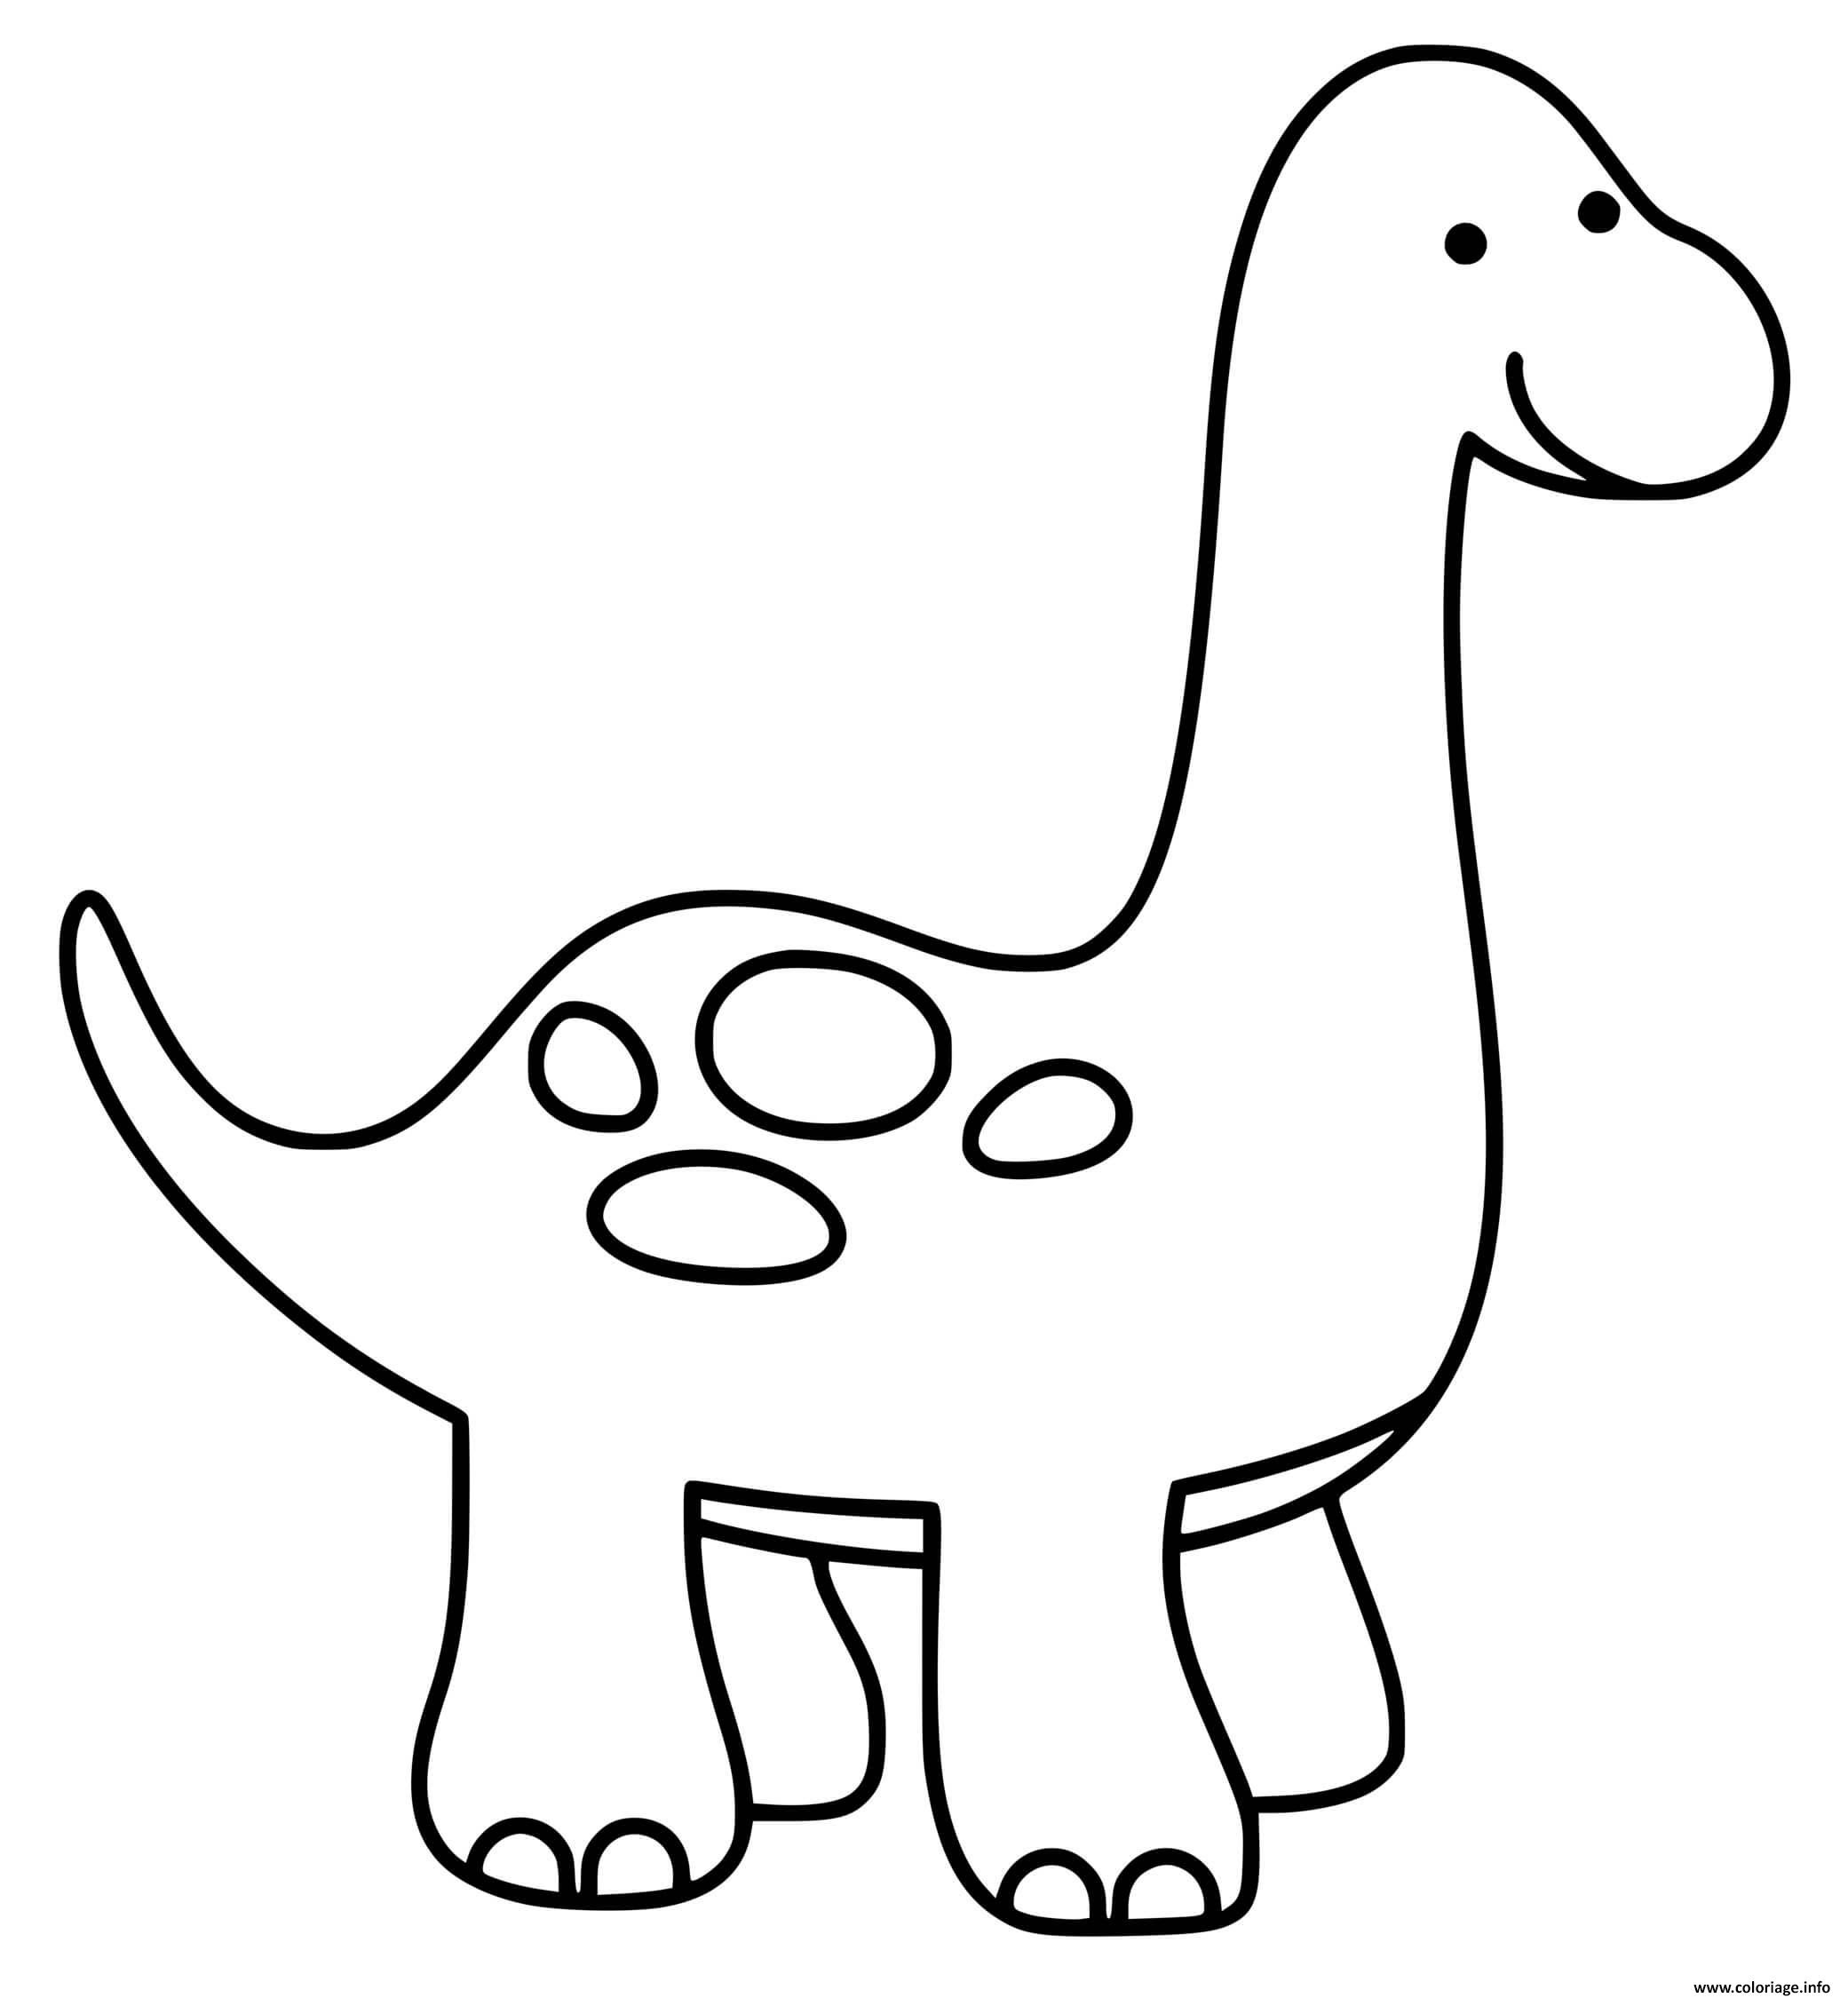 Coloriage dinosaure  facile simple  JeColorie com